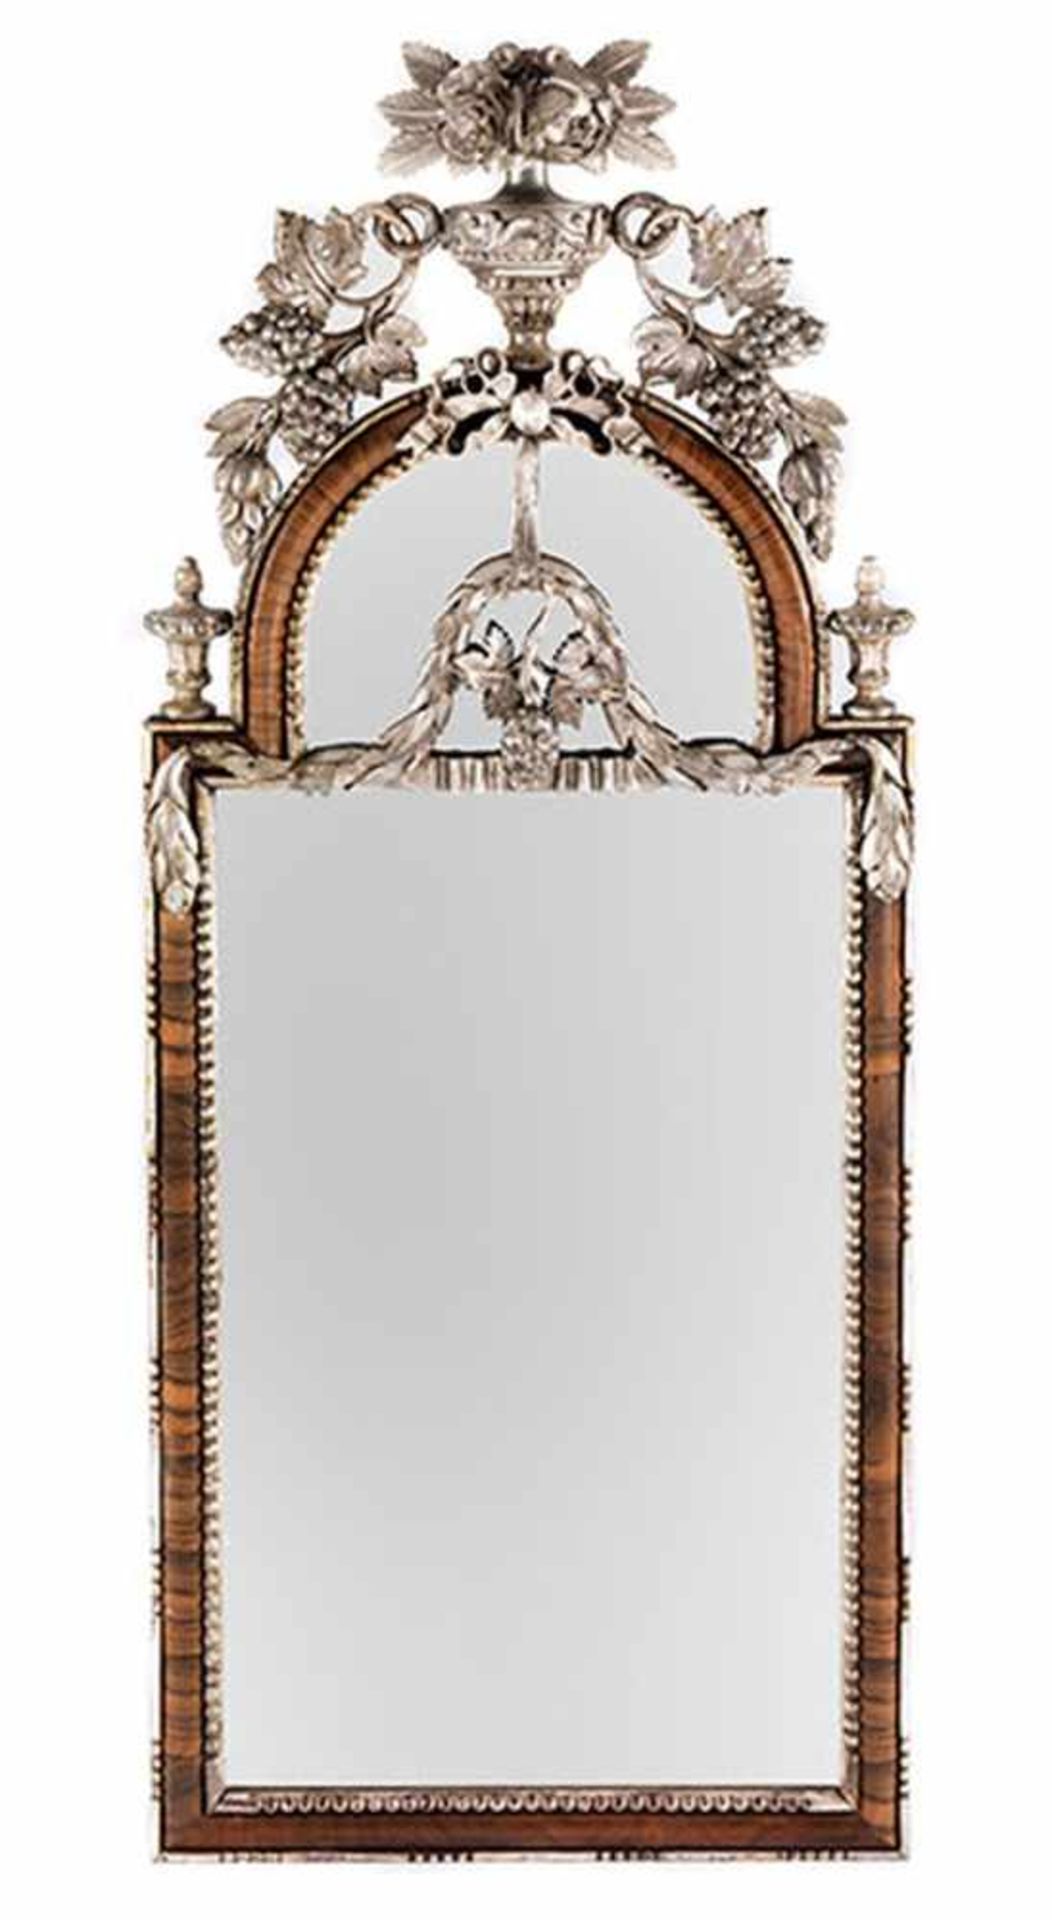 Altonaer Spiegel Höhe: 128 cm. Breite: 52,5 cm. Altona, um 1770/80. Weichholz, geschnitzt, - Bild 3 aus 3